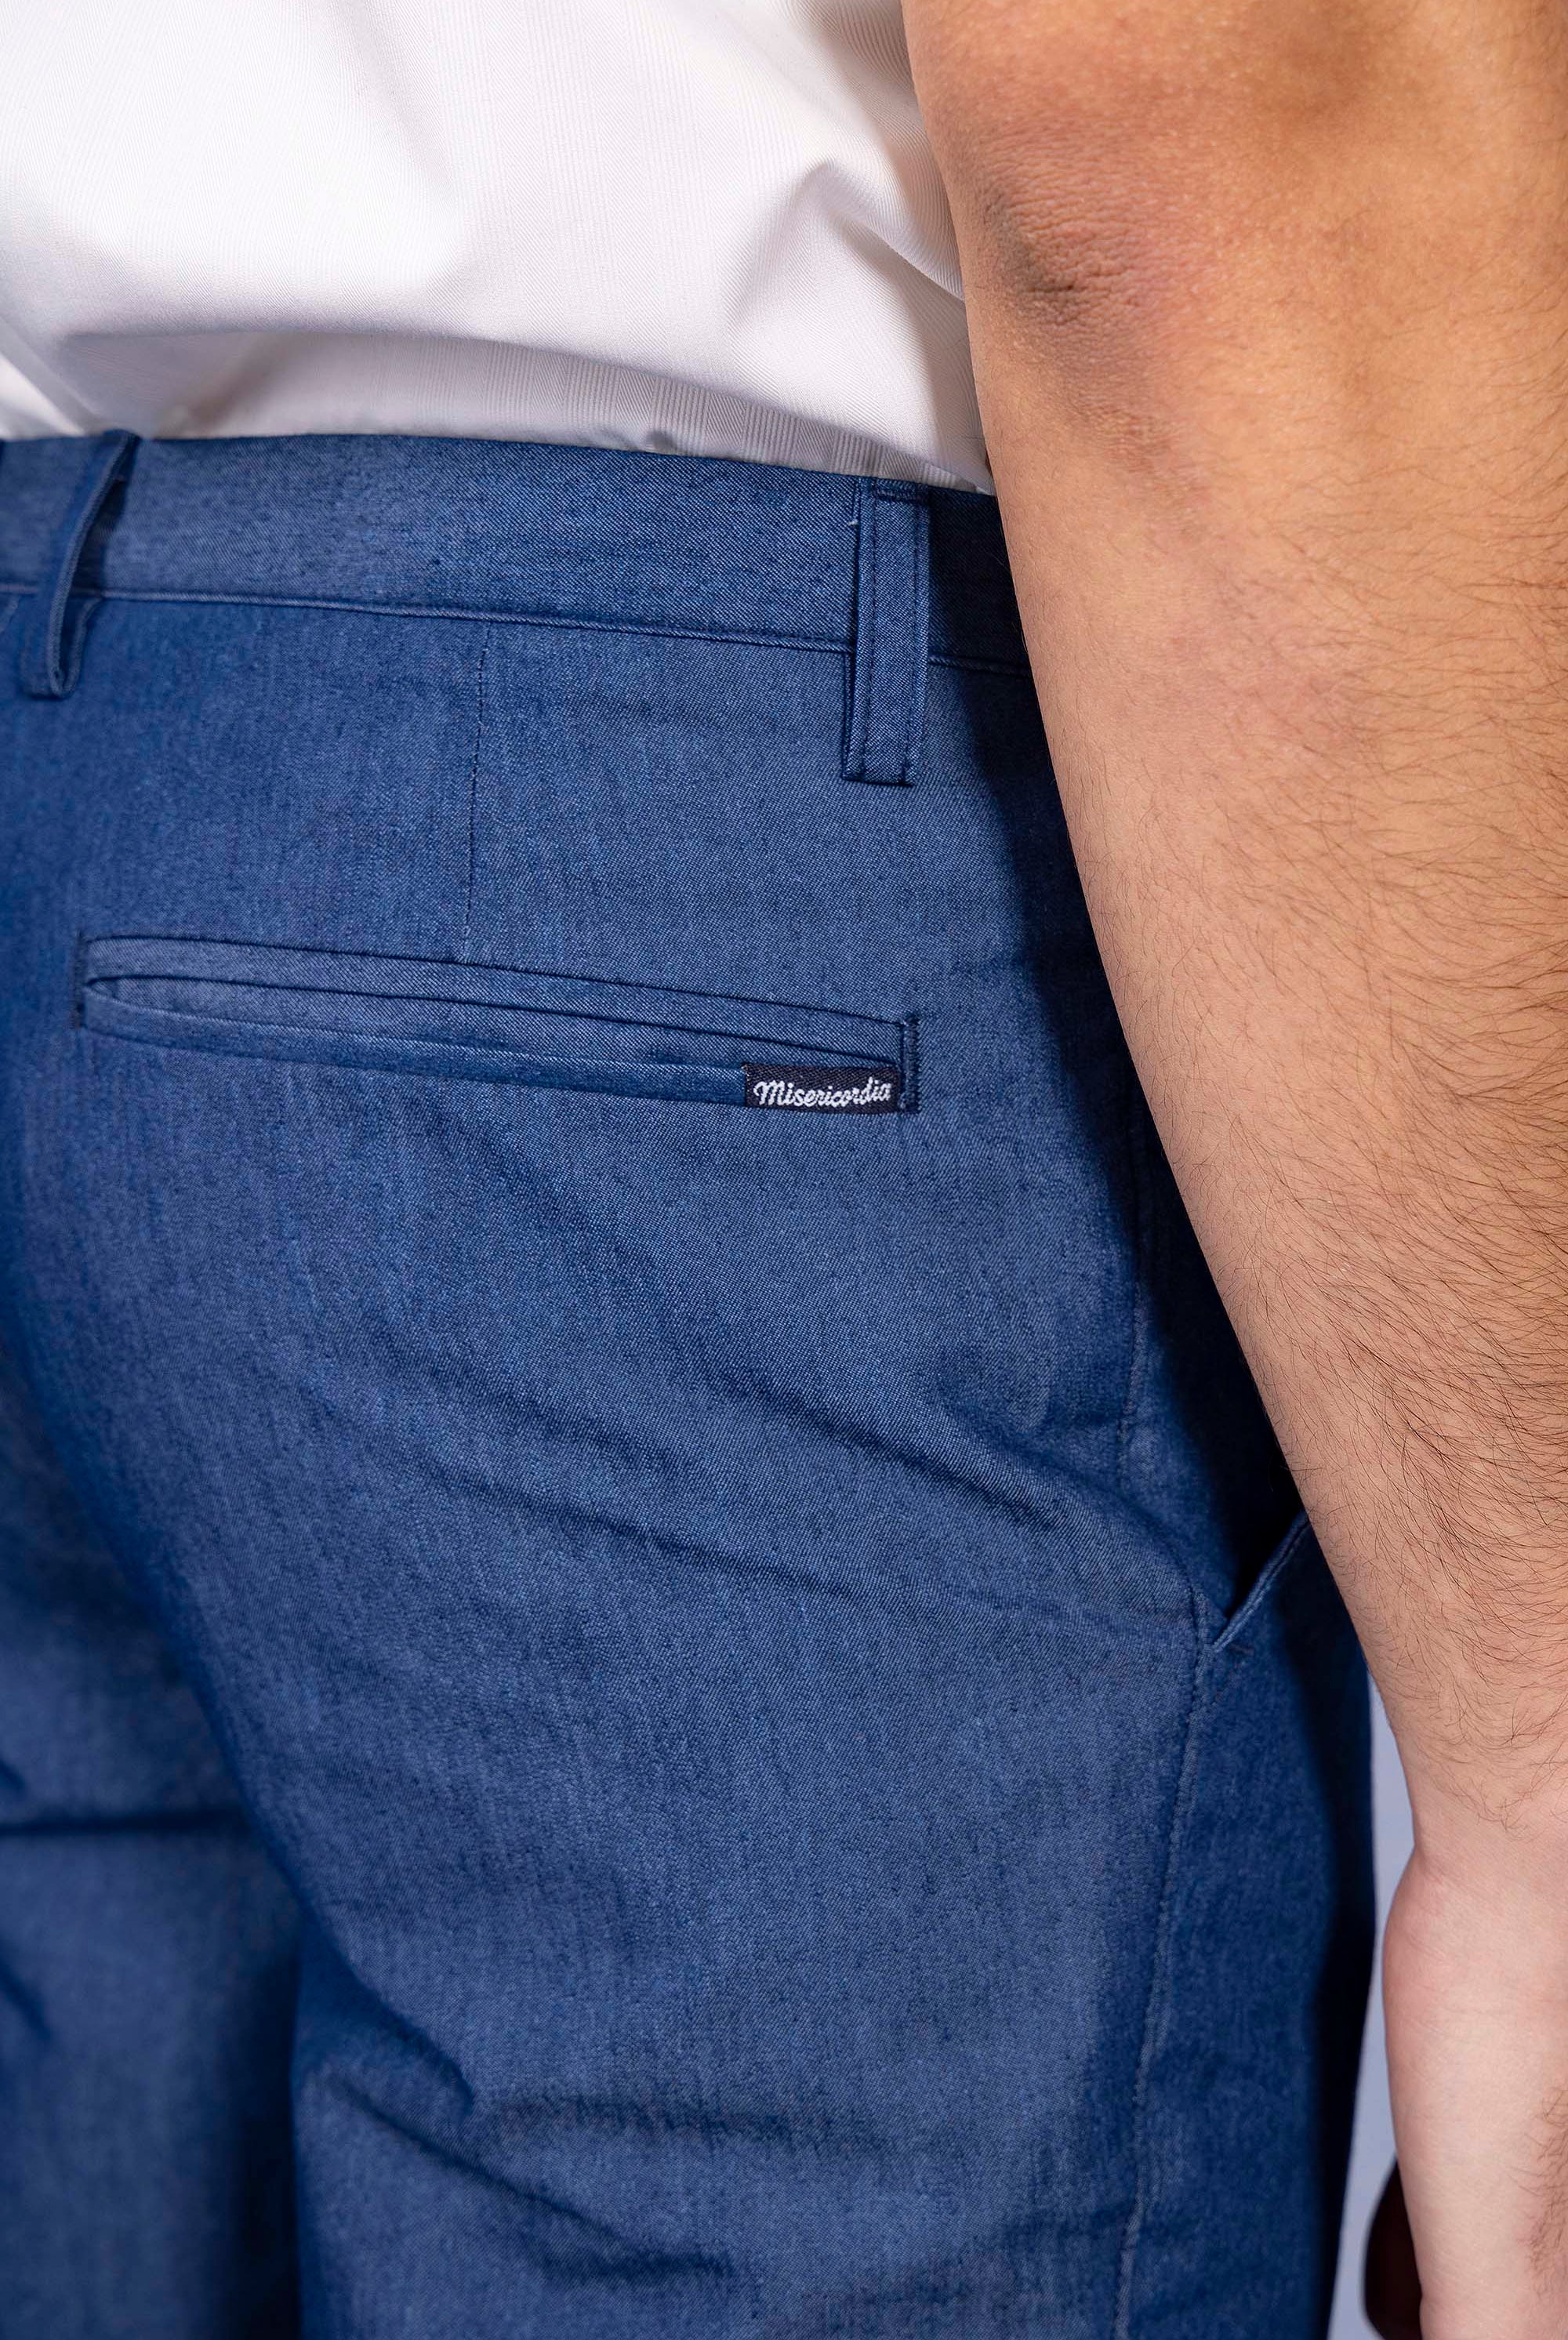 Pantalon Vacilacion Bleu Denim pantalons élégants pour hommes, déclinés dans une large gamme de motifs et de coupes